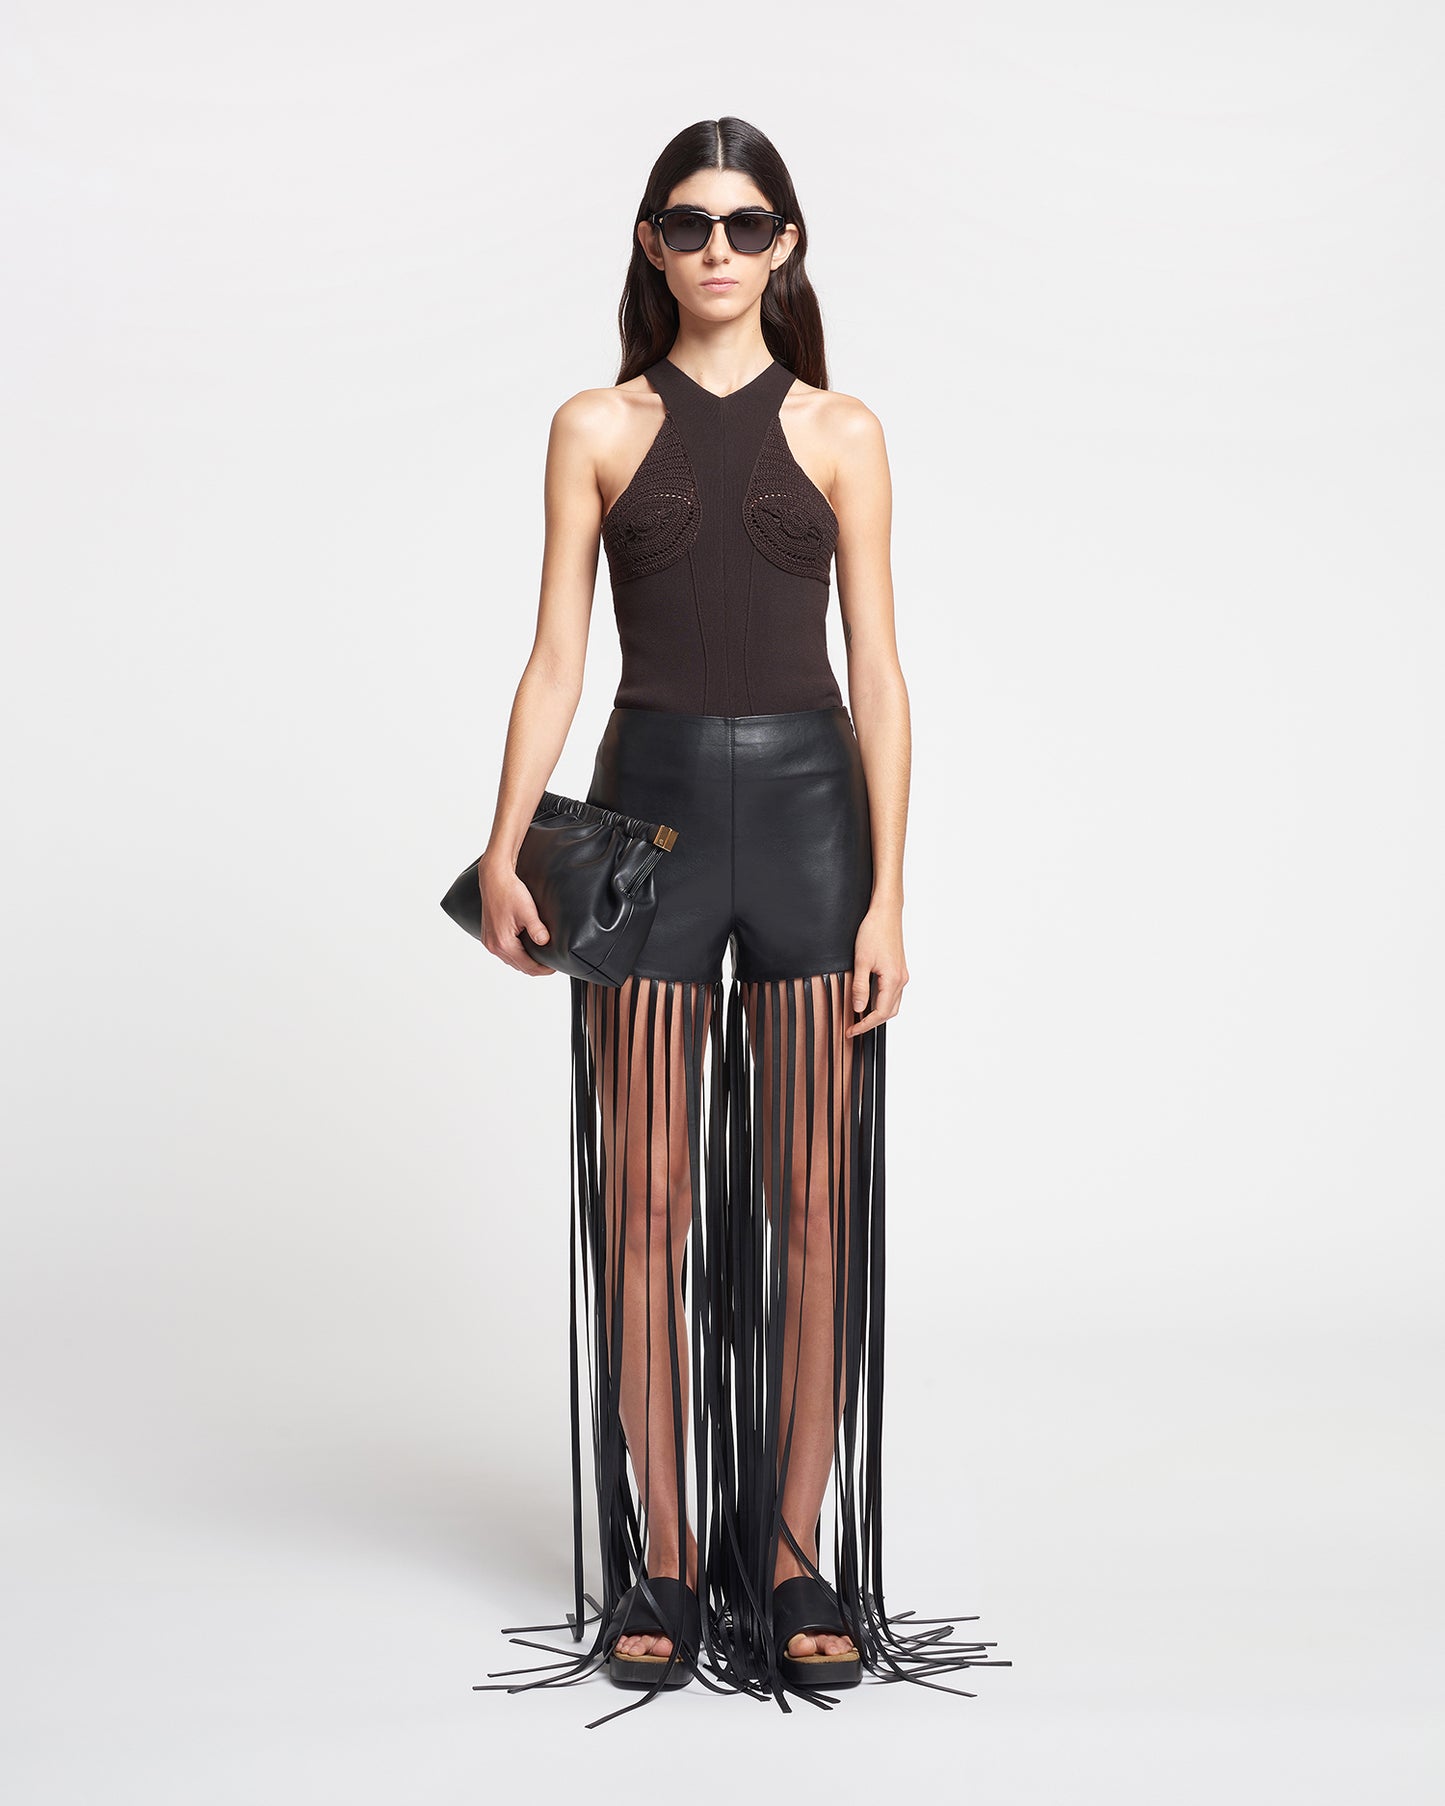 Amalee - Fringed Regenerated Leather Shorts - Black